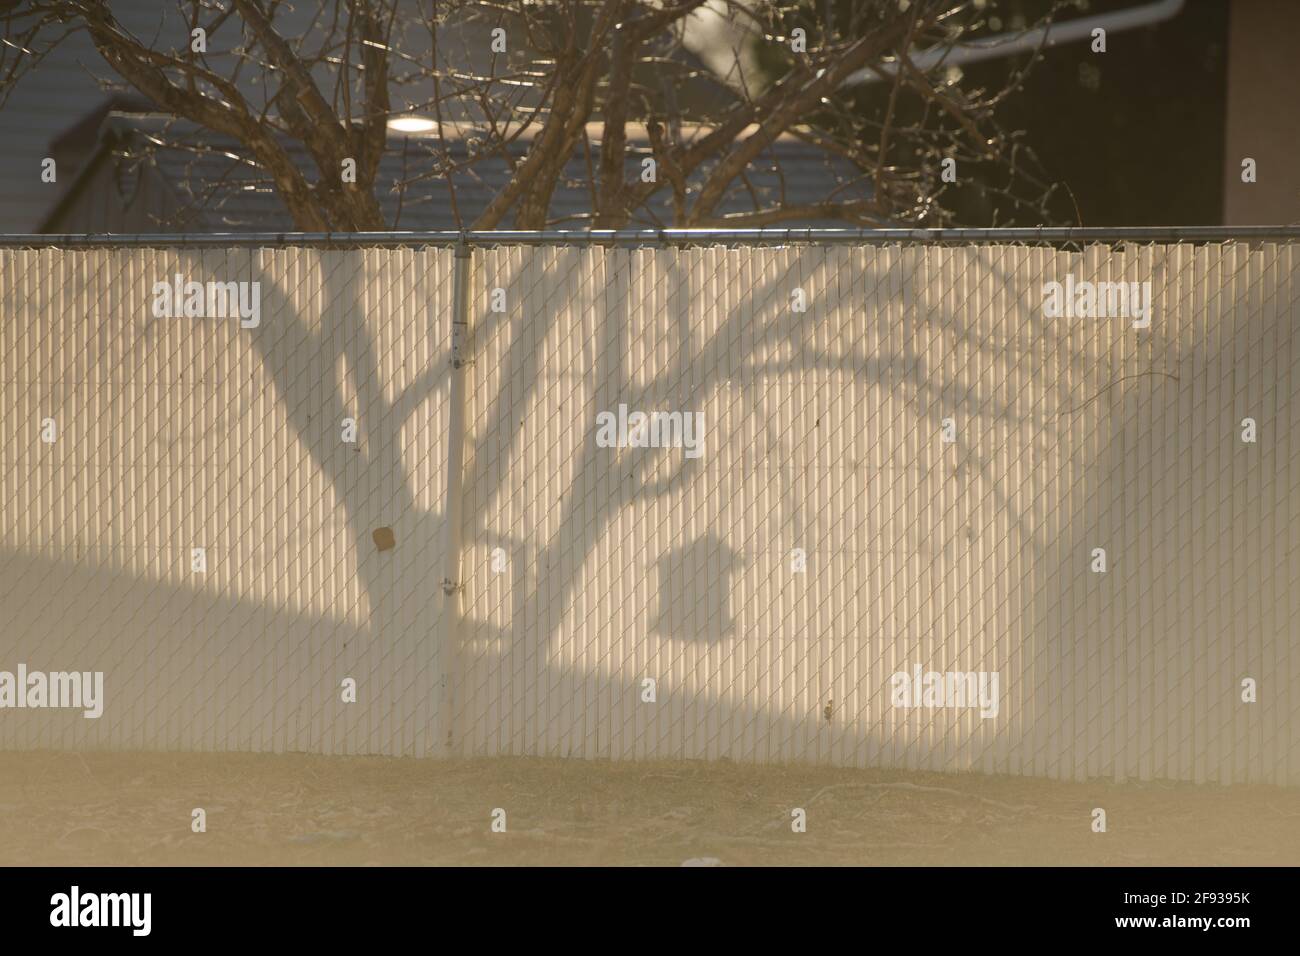 Schatten am Zaun des Vogelfutterhäuschen, die an einem Baum hängen Städtisches Viertel weißer Zaun schwarzer Schatten von Ästen leer Platz für type Morgensonne Stockfoto